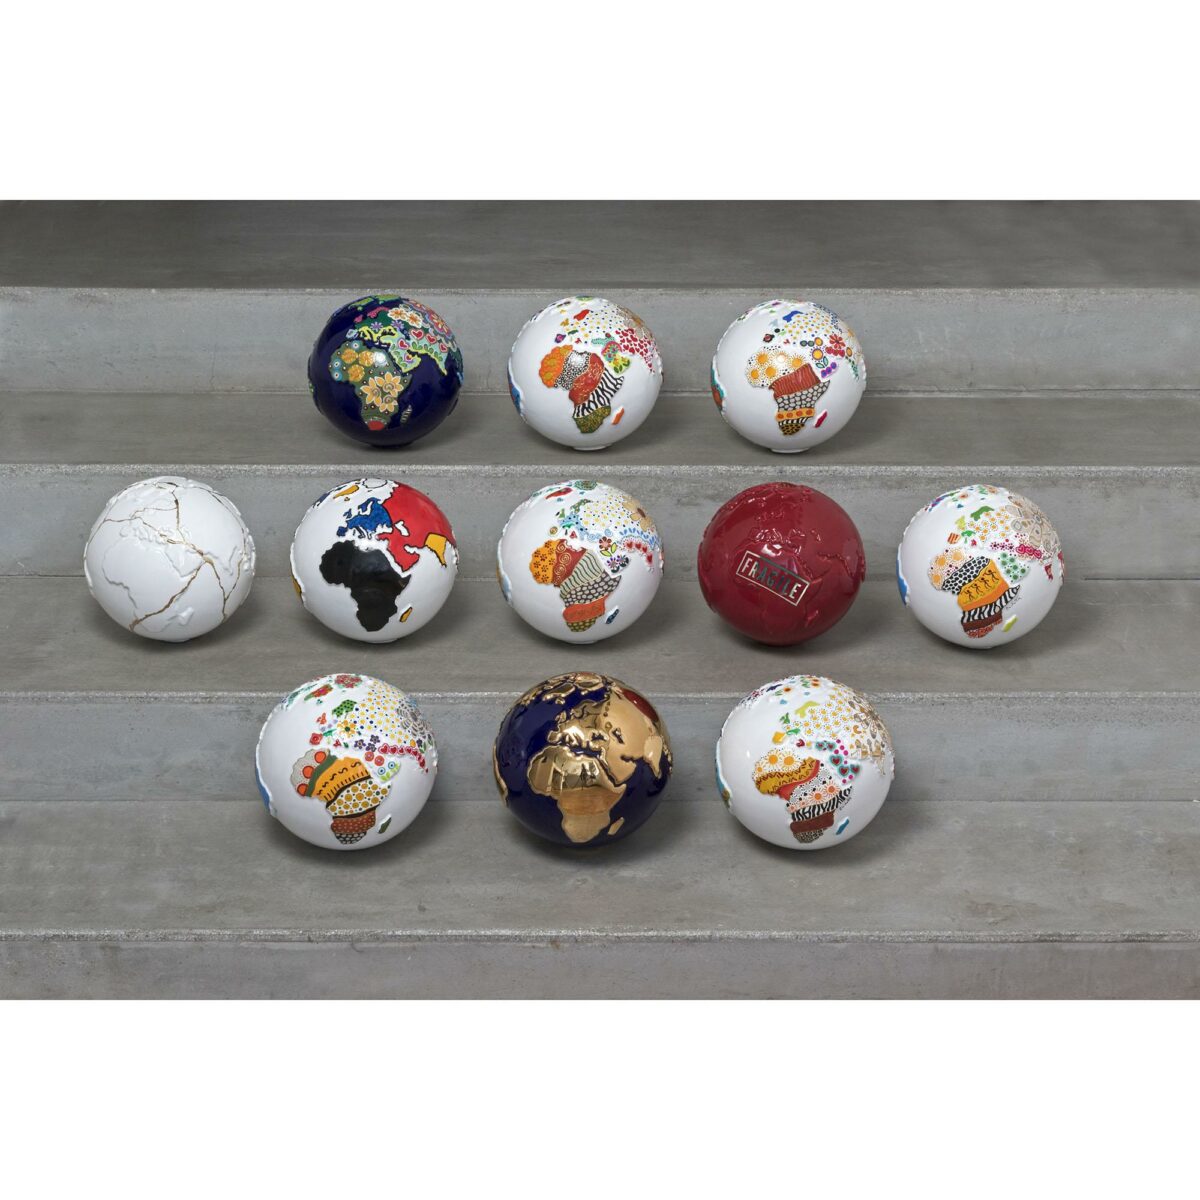 Collezione completa Il Pianeta dell'arte globi in ceramica di vari colori rappresentante la terra con decori a mano sui continenti e appoggiato su una base quadrata in legno bianco